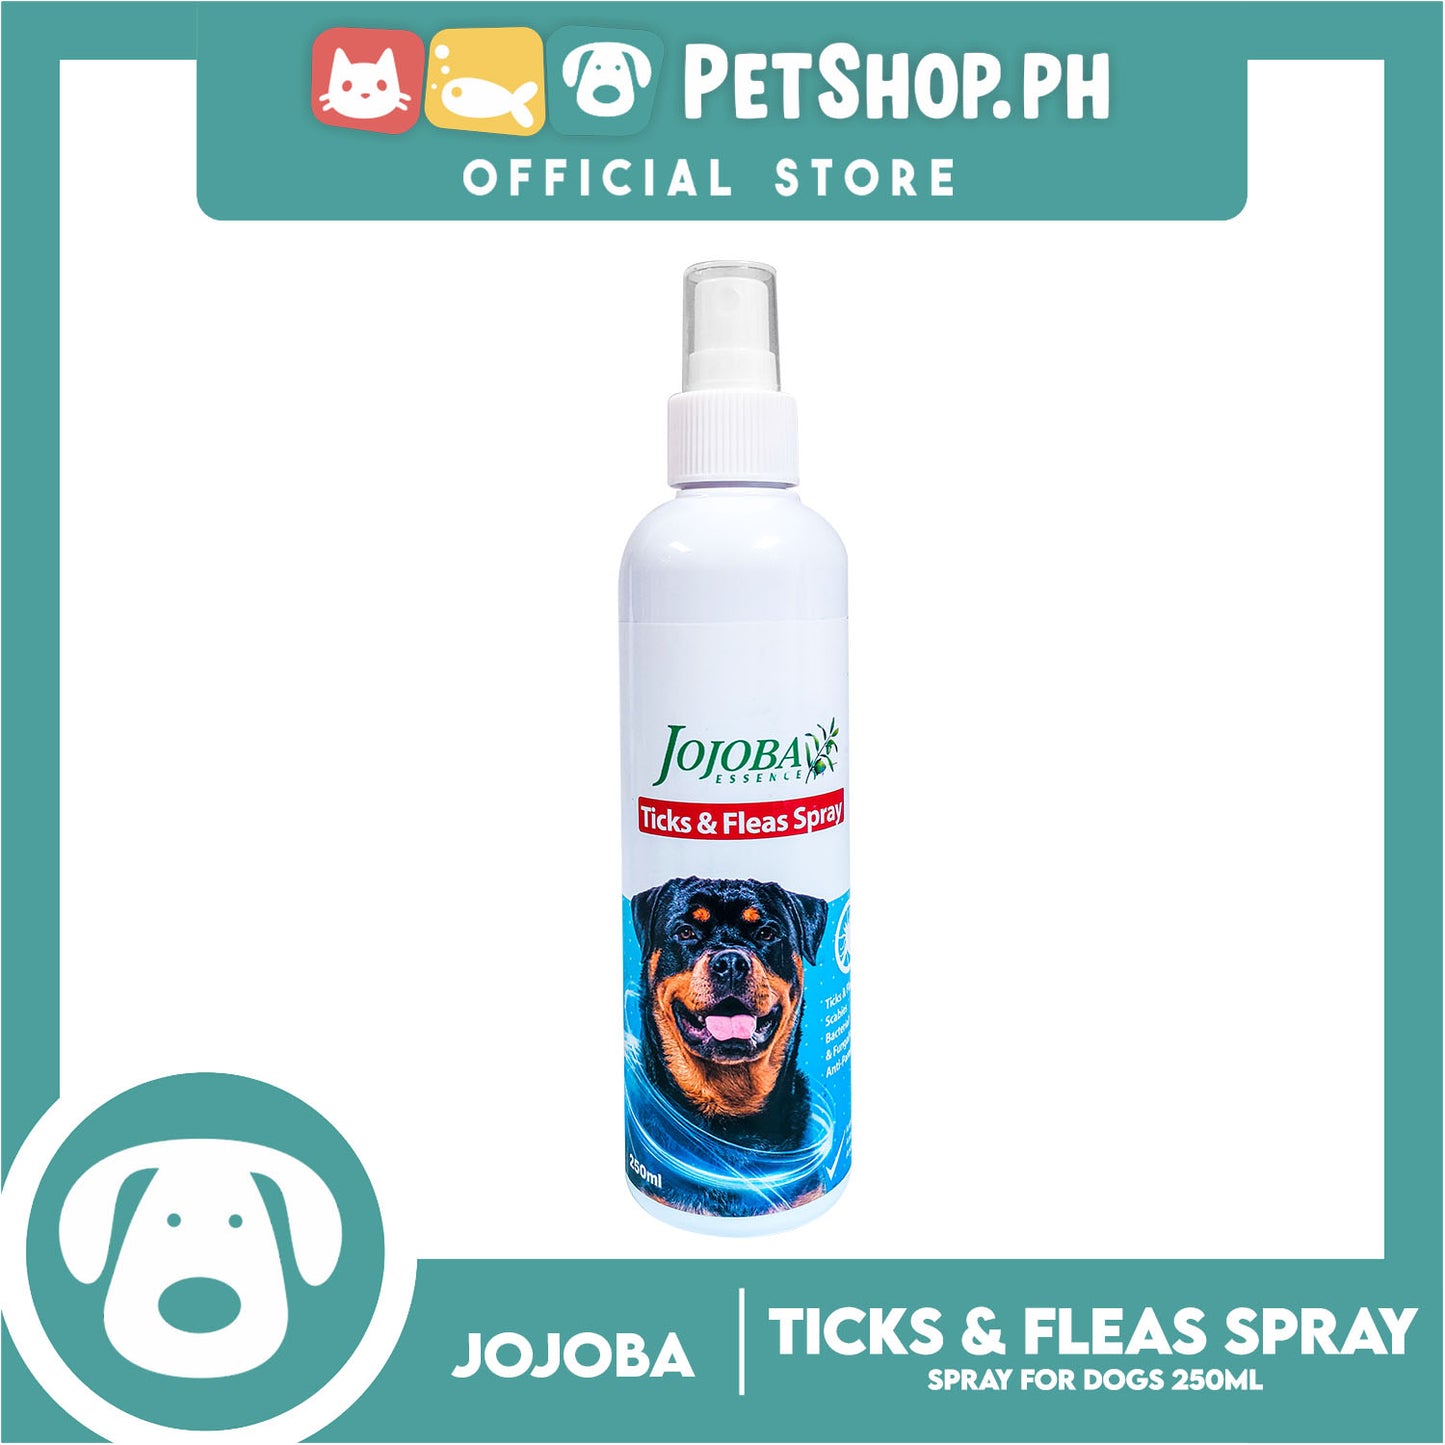 Jojoba Essence Ticks And Fleas Spray 250ml Anti-Fungal, Anti-Parasite, Anti-Bacterial For Dogs